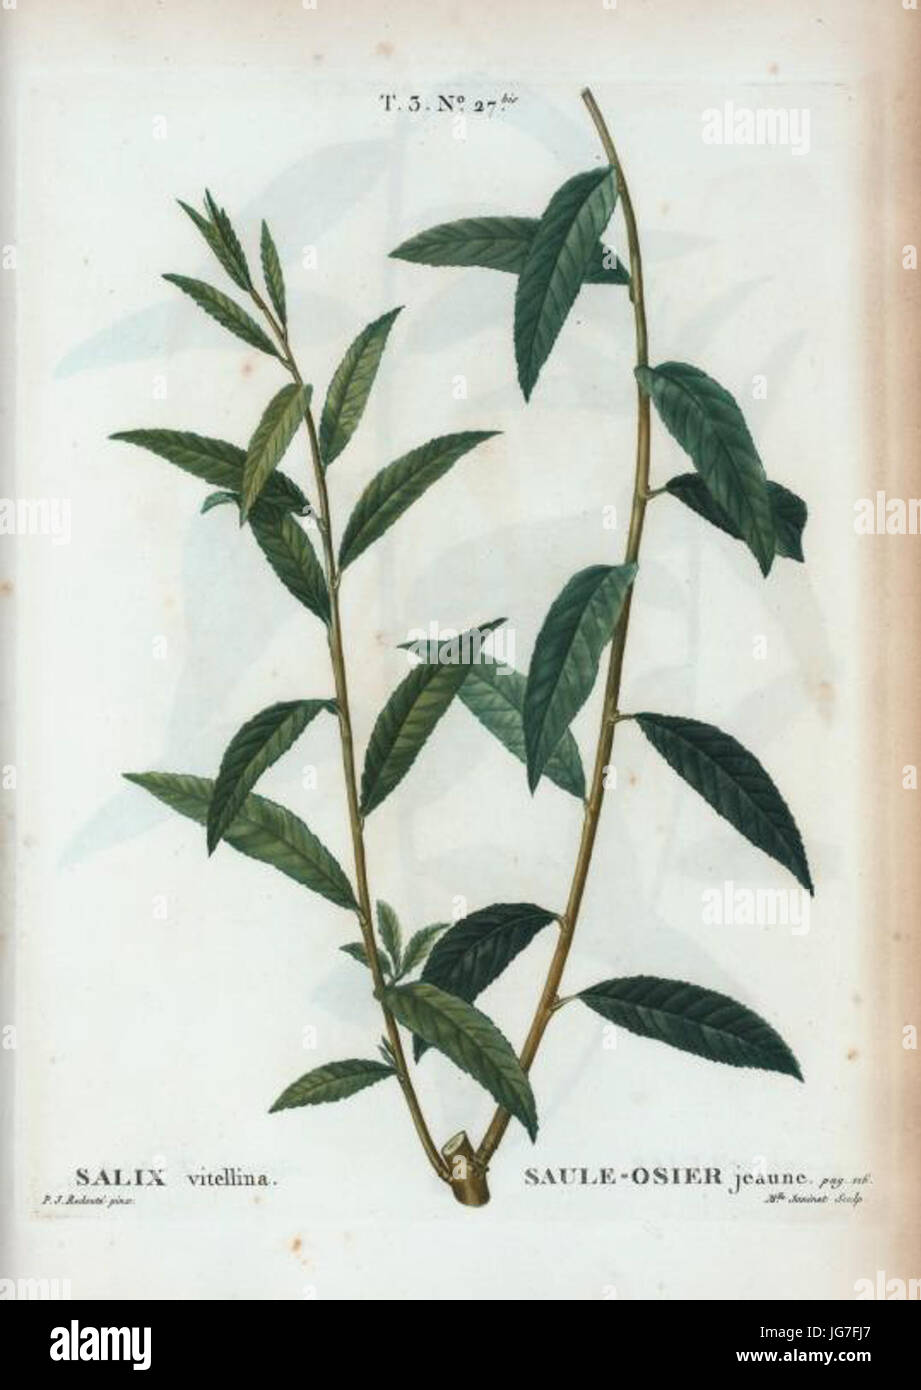 T3   Salix vitellina par Pierre-Joseph Redouté Stock Photo